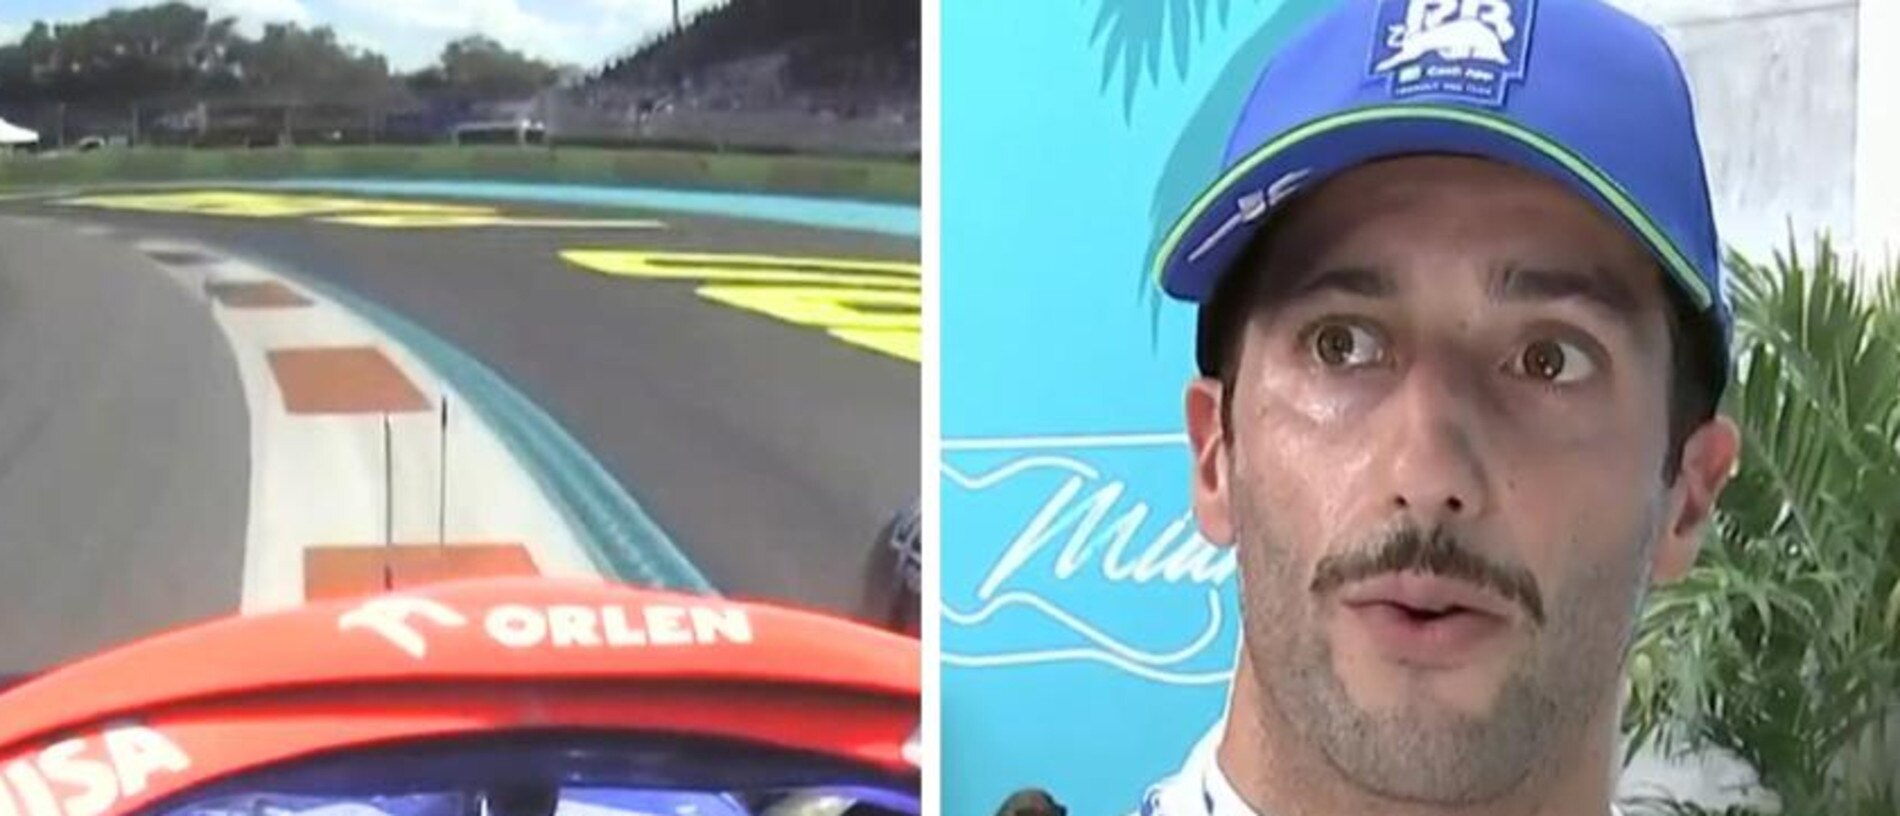 Daniel Ricciardo will start the Miami Grand Prix from dead last. 